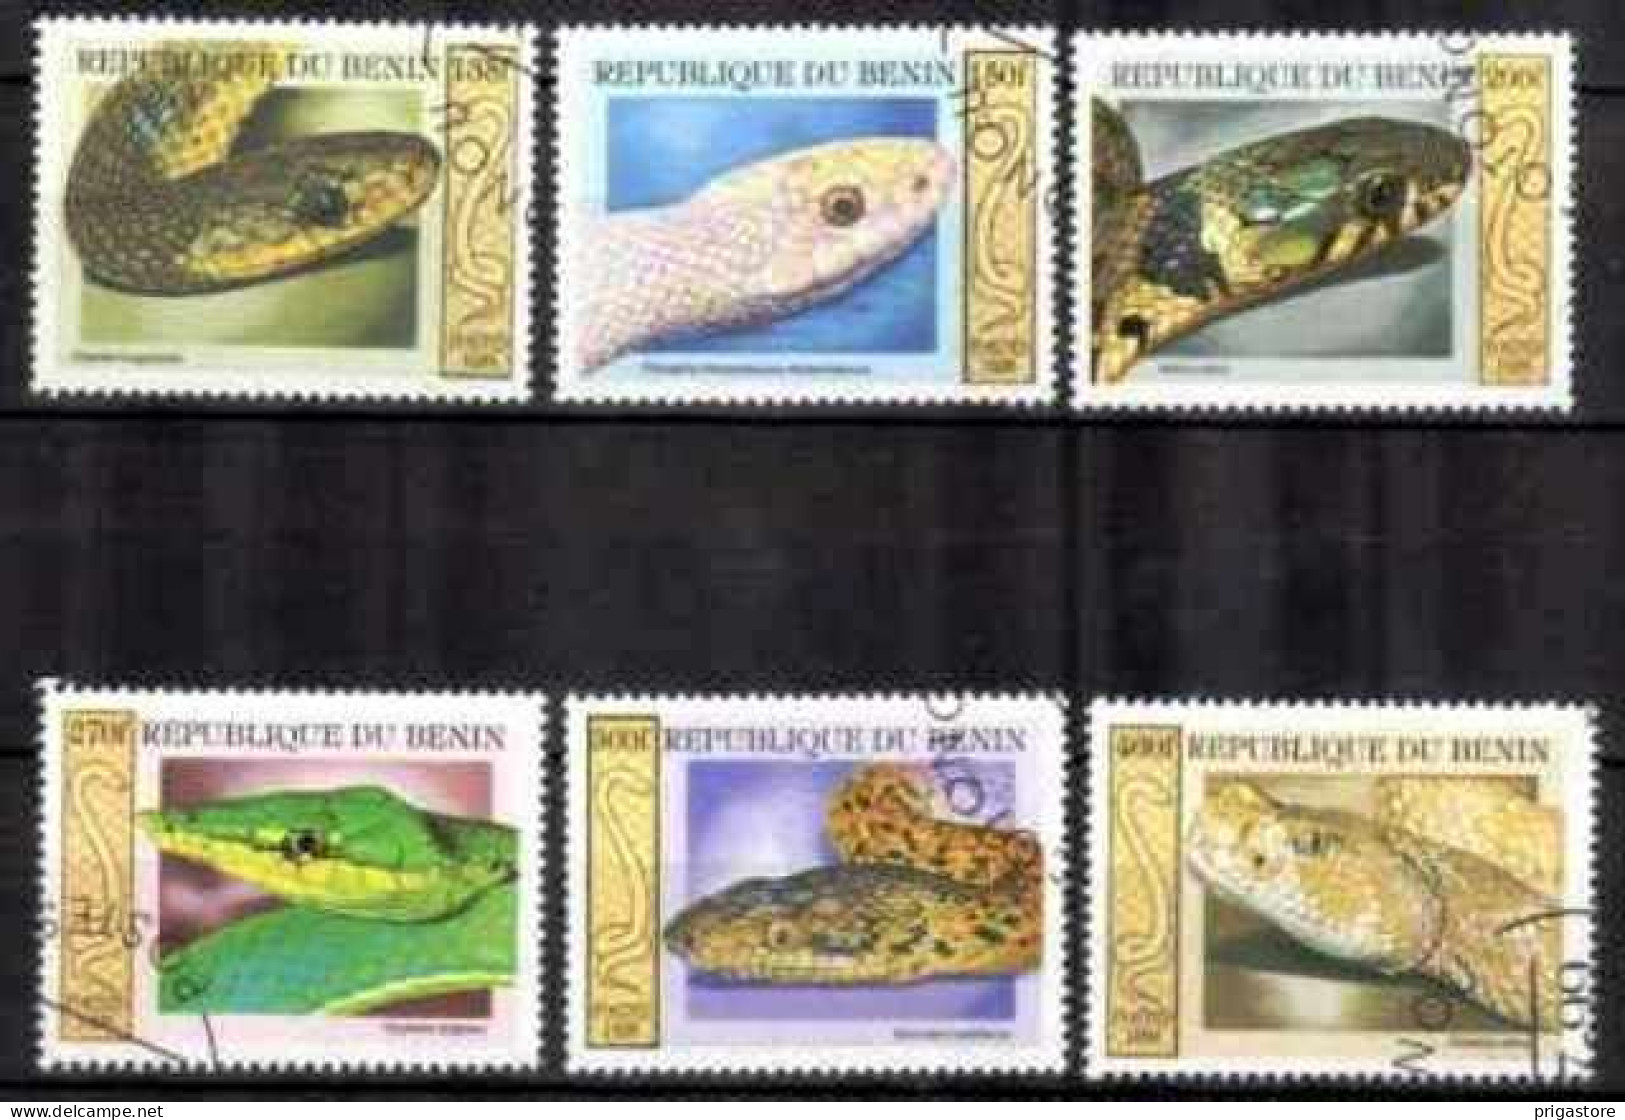 Animaux Serpents Bénin 1999 (30) Yvert N° 914 à 919 Oblitéré Used - Serpents